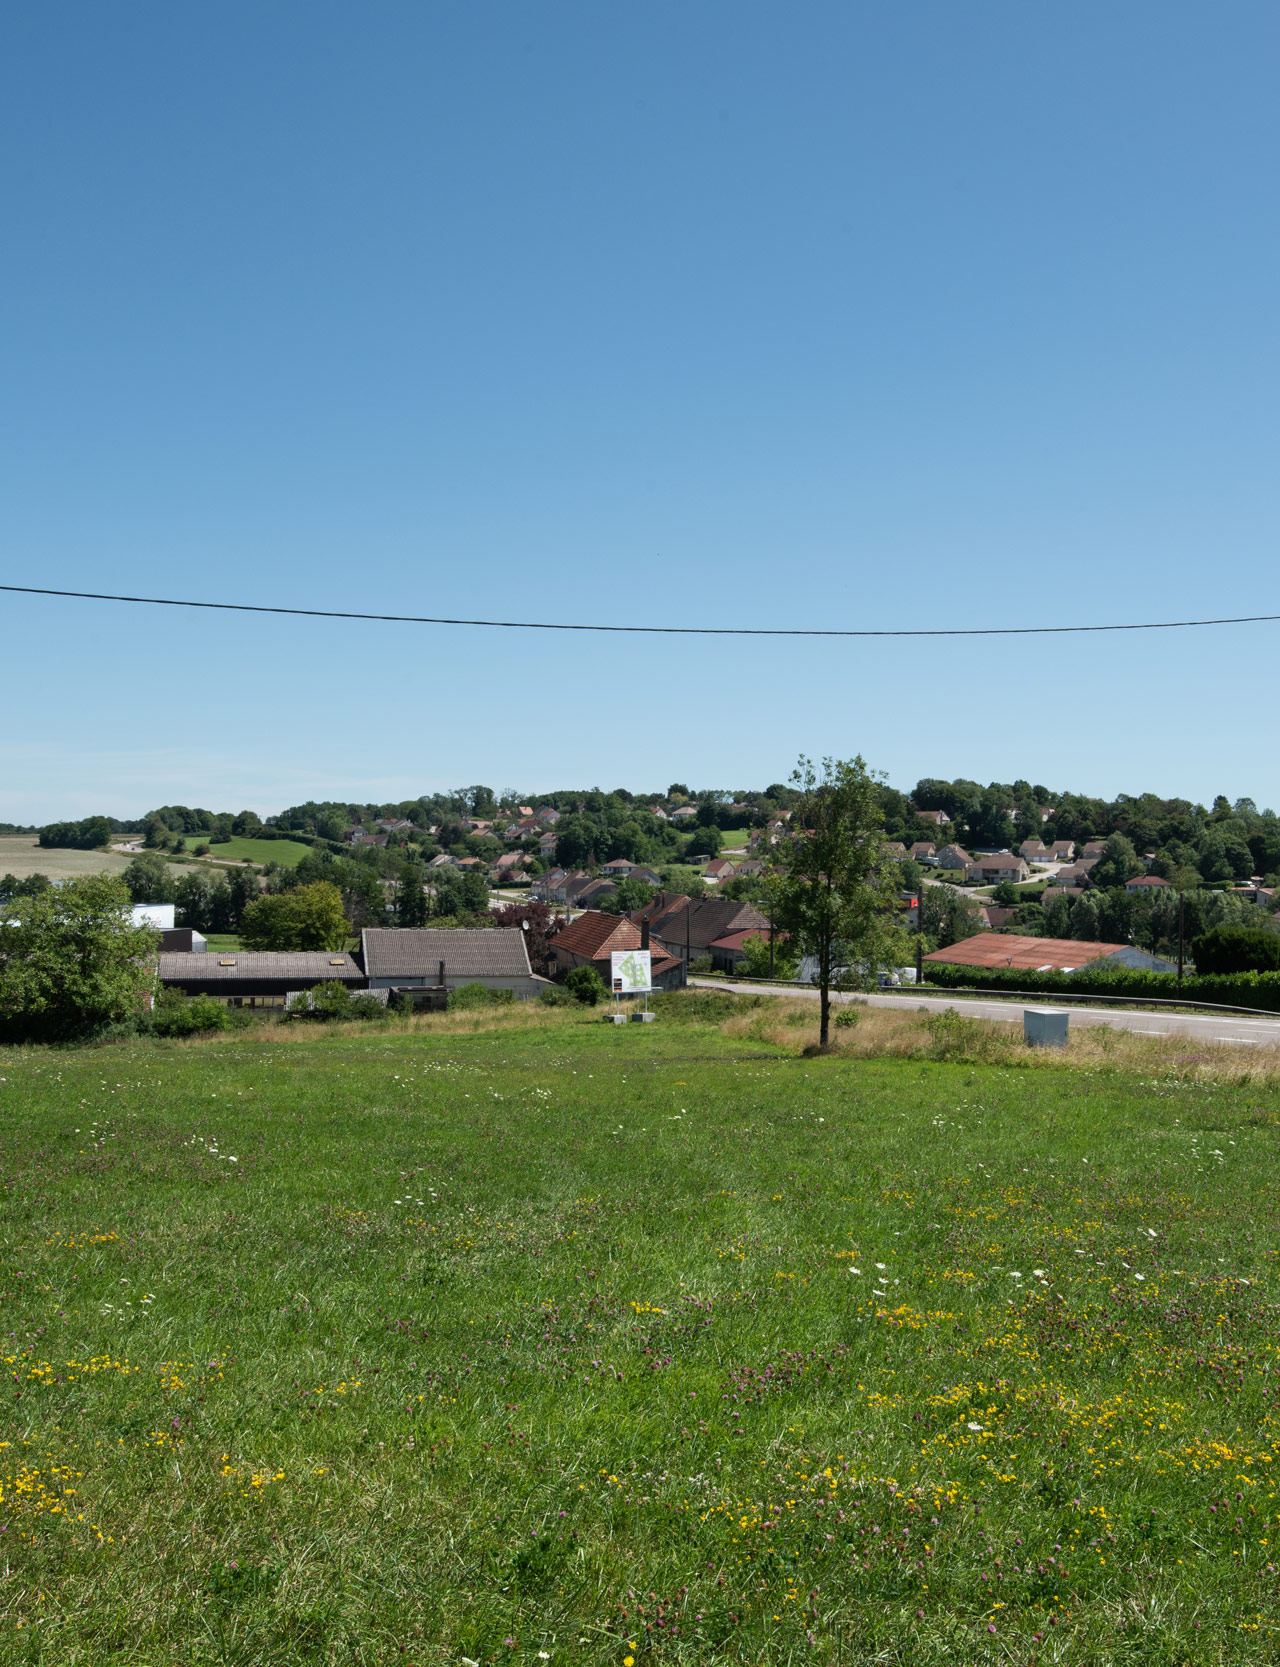 Des projets d'extensions urbaines qui voient le jour dans le paysage de la vallée du Doubs sur les 'bonnes' terres agricoles - RD673 reliant Dole à Besançon - La Barre 